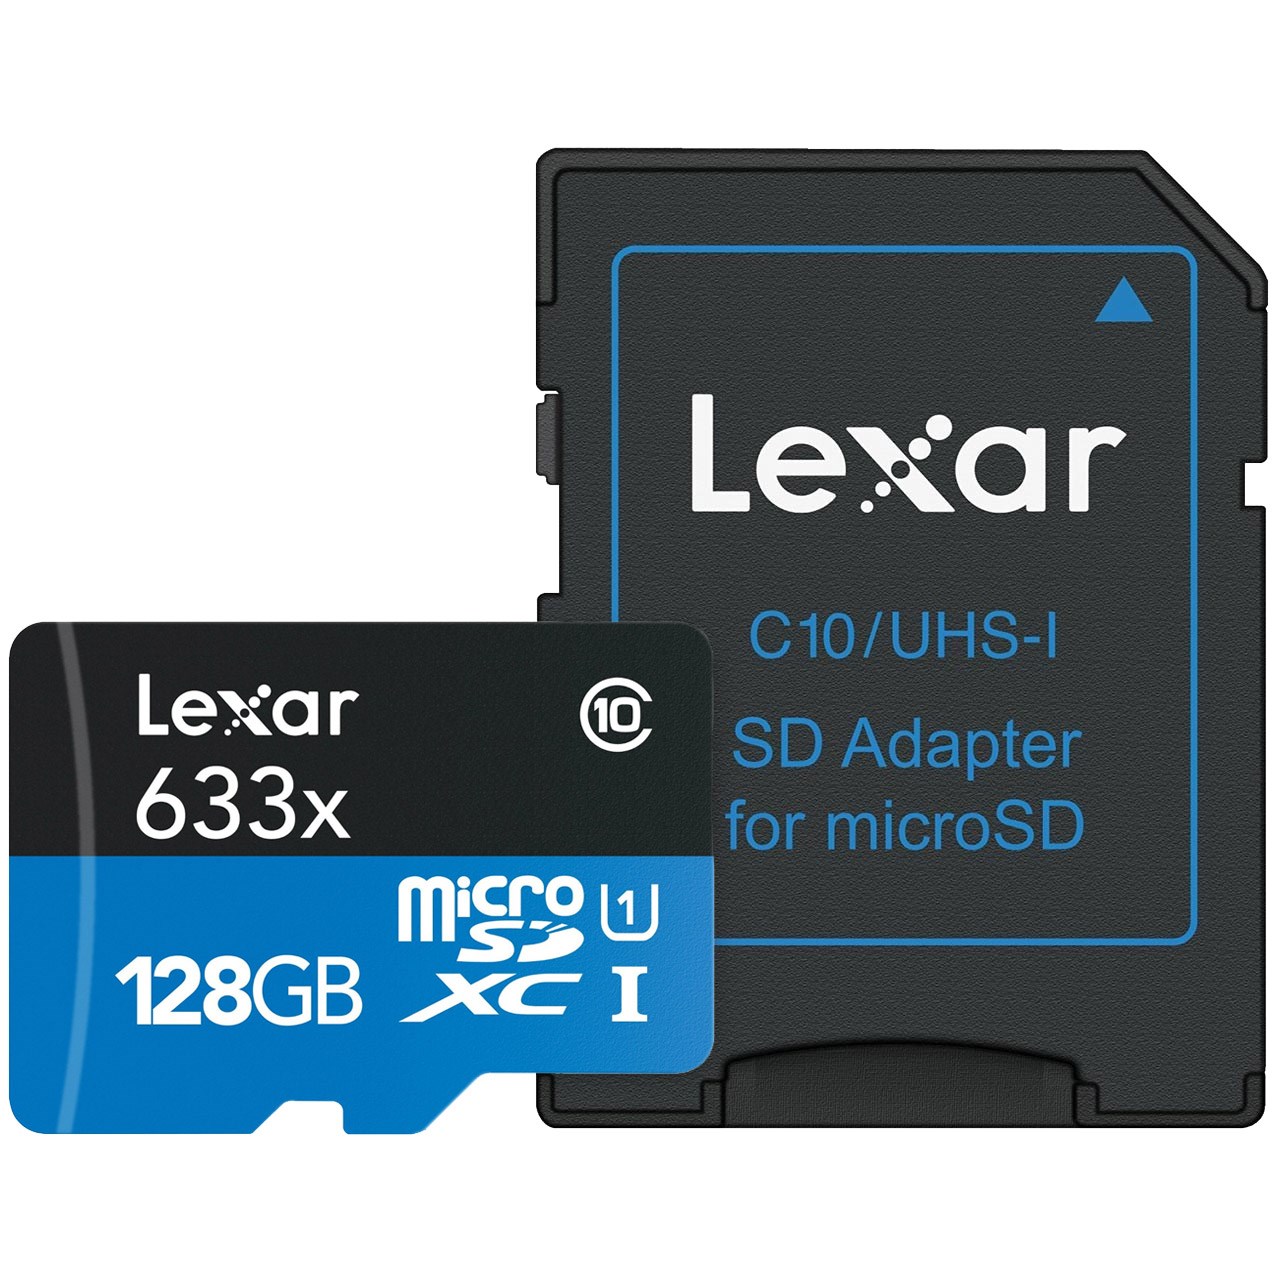 نقد و بررسی کارت حافظه microSDXC لکسار مدل High-Performance کلاس 10 استاندارد UHS-I U1 سرعت 95MBps 633X همراه با آداپتور SD ظرفیت 128 گیگابایت توسط خریداران